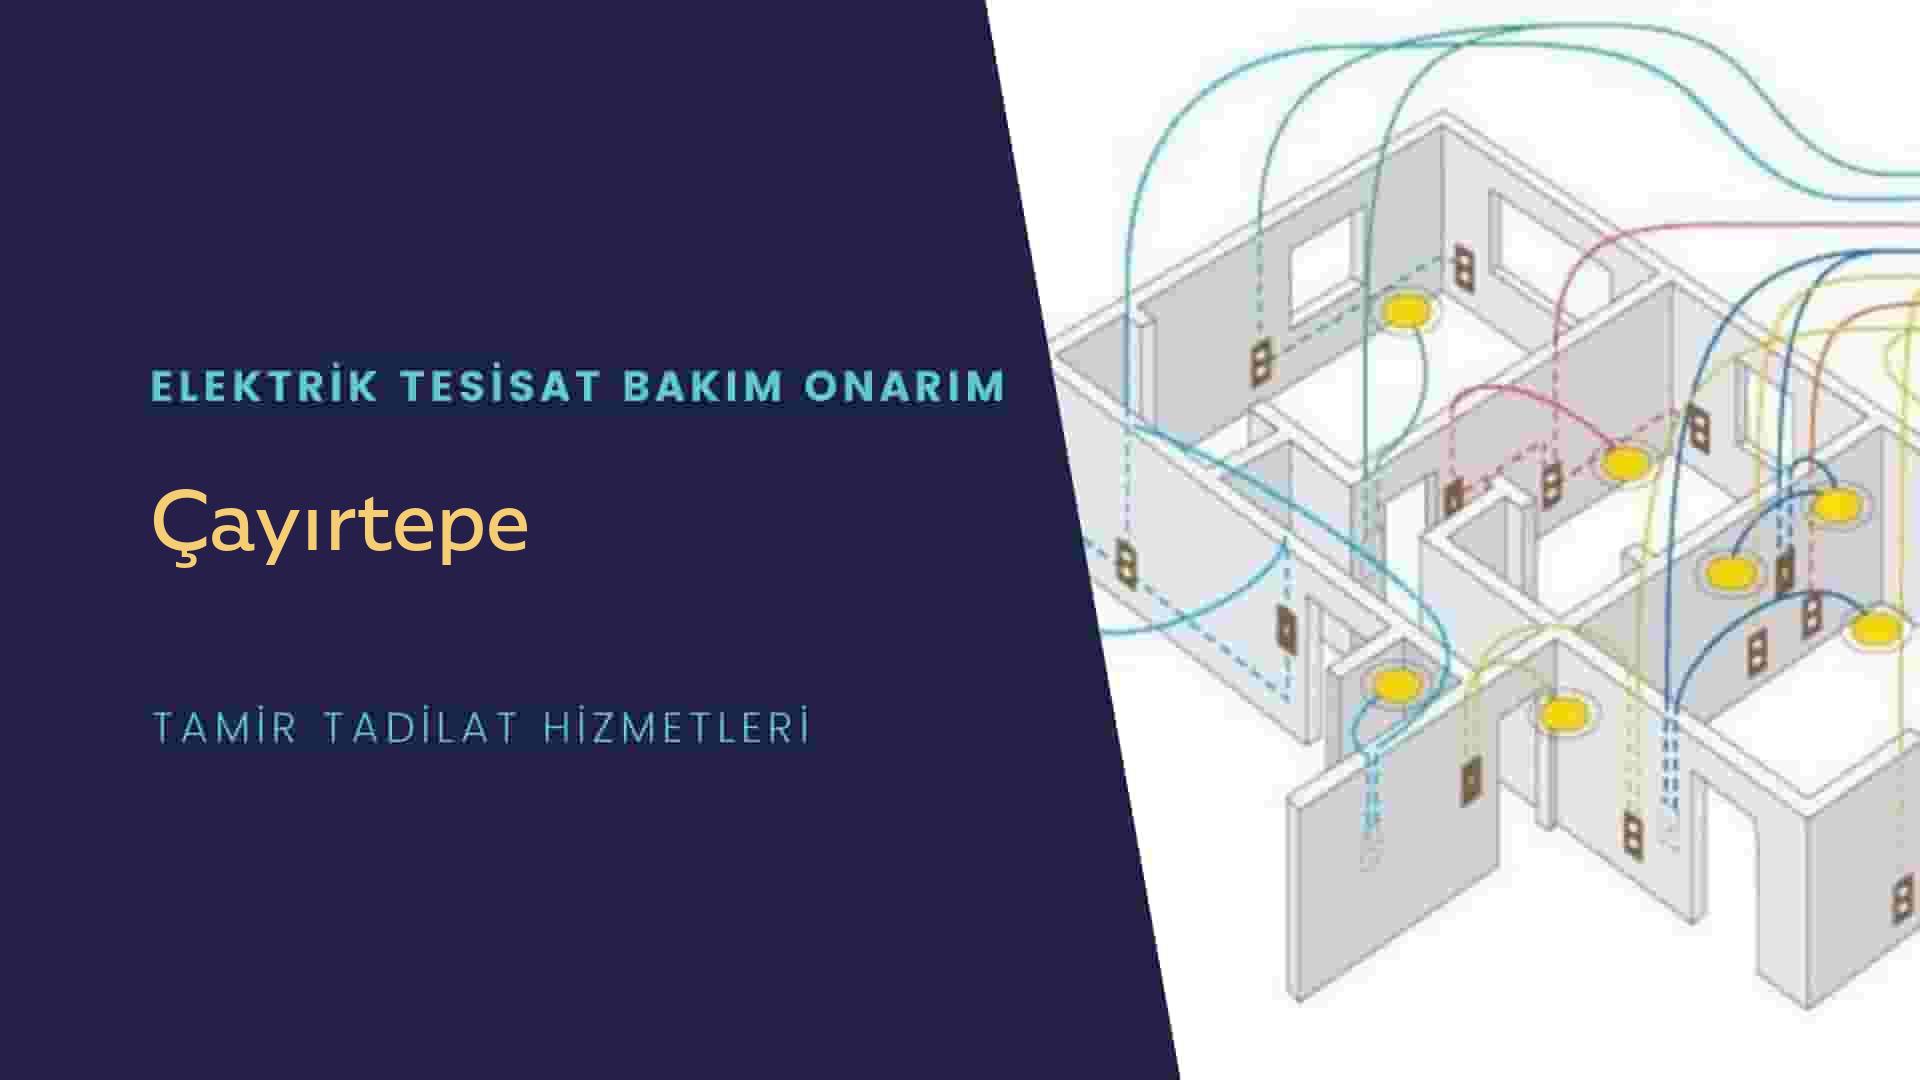 Çayırtepe'de elektrik tesisatı ustalarımı arıyorsunuz doğru adrestenizi Çayırtepe elektrik tesisatı ustalarımız 7/24 sizlere hizmet vermekten mutluluk duyar.